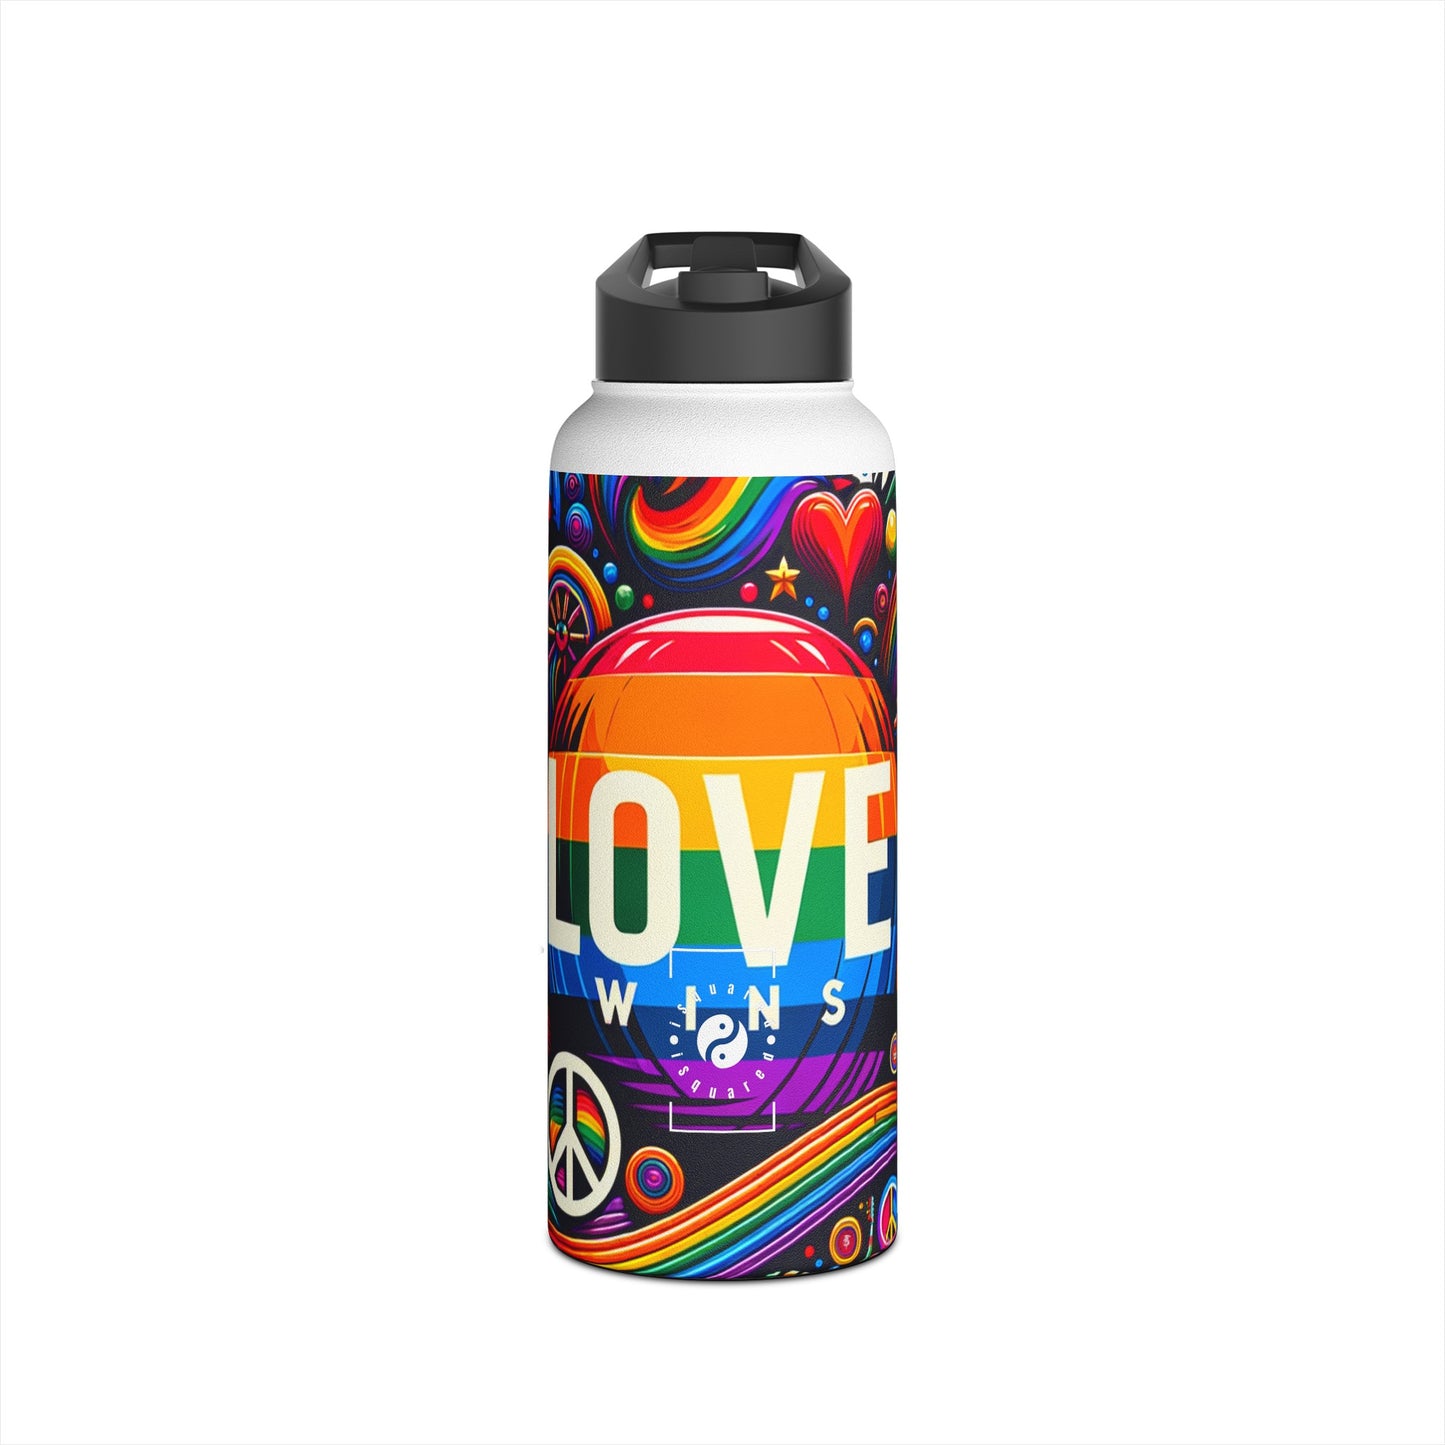 LOVE WINS - Water Bottle